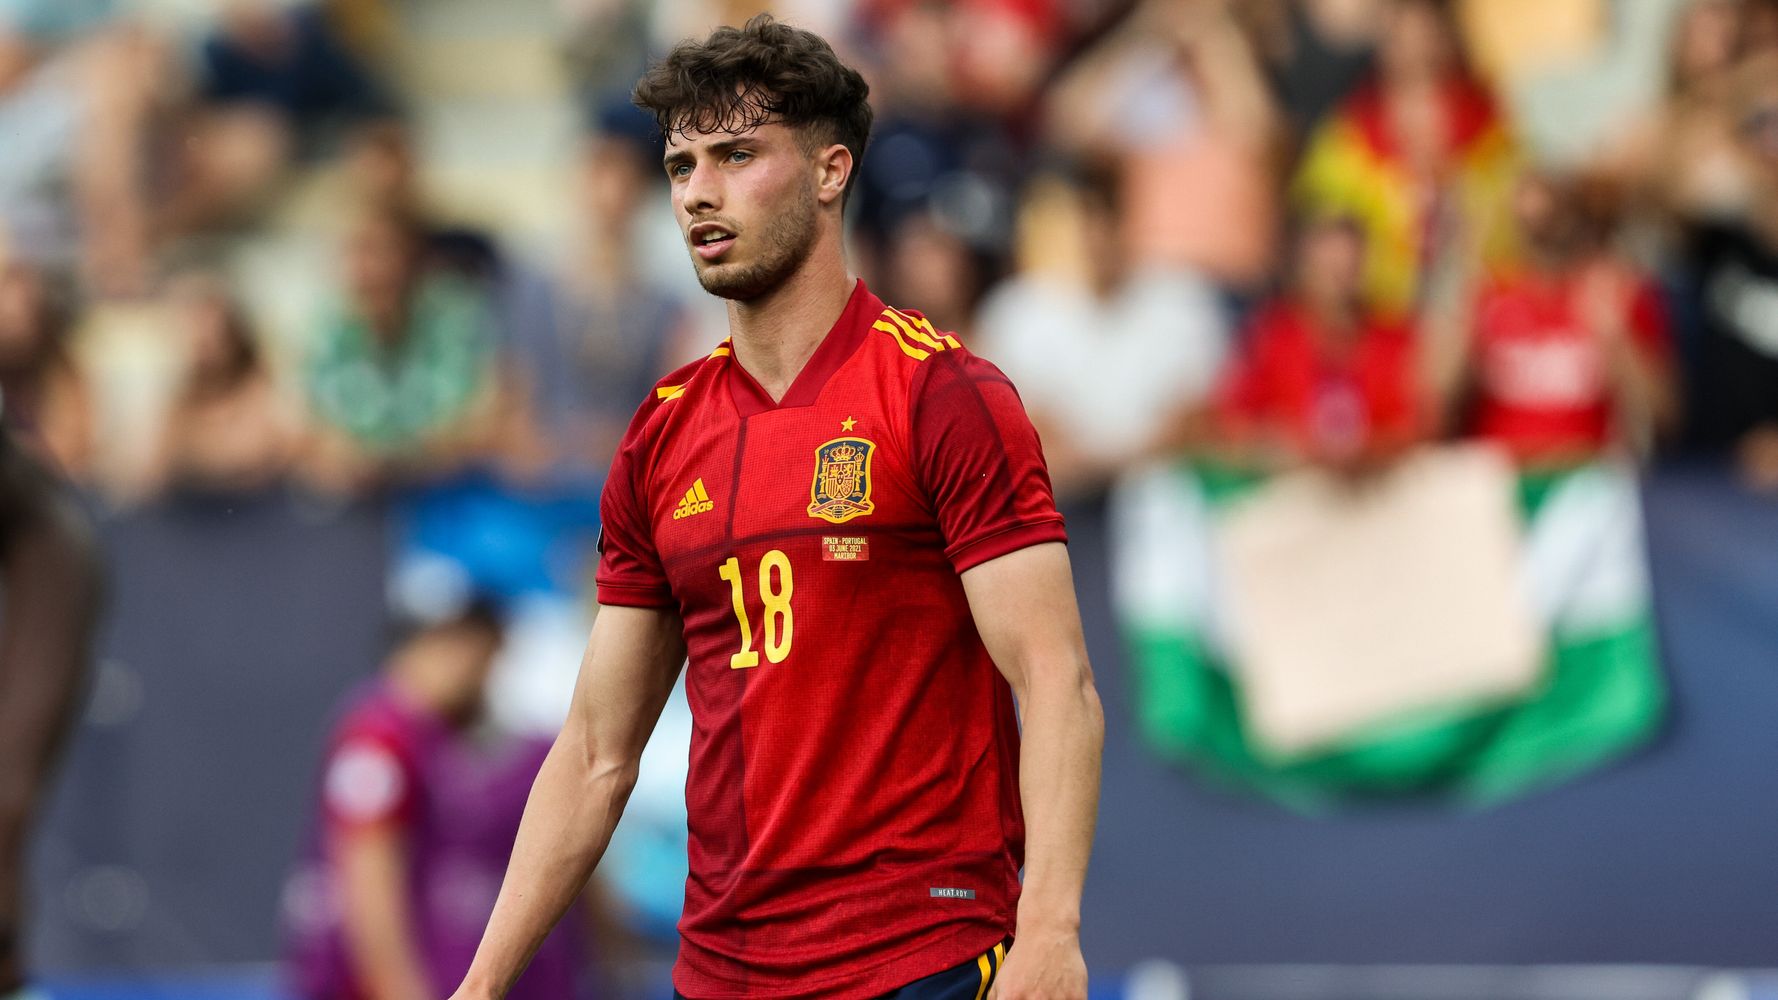 El jugador más guapo de la Este futbolista español causa sensación en redes | El HuffPost Virales